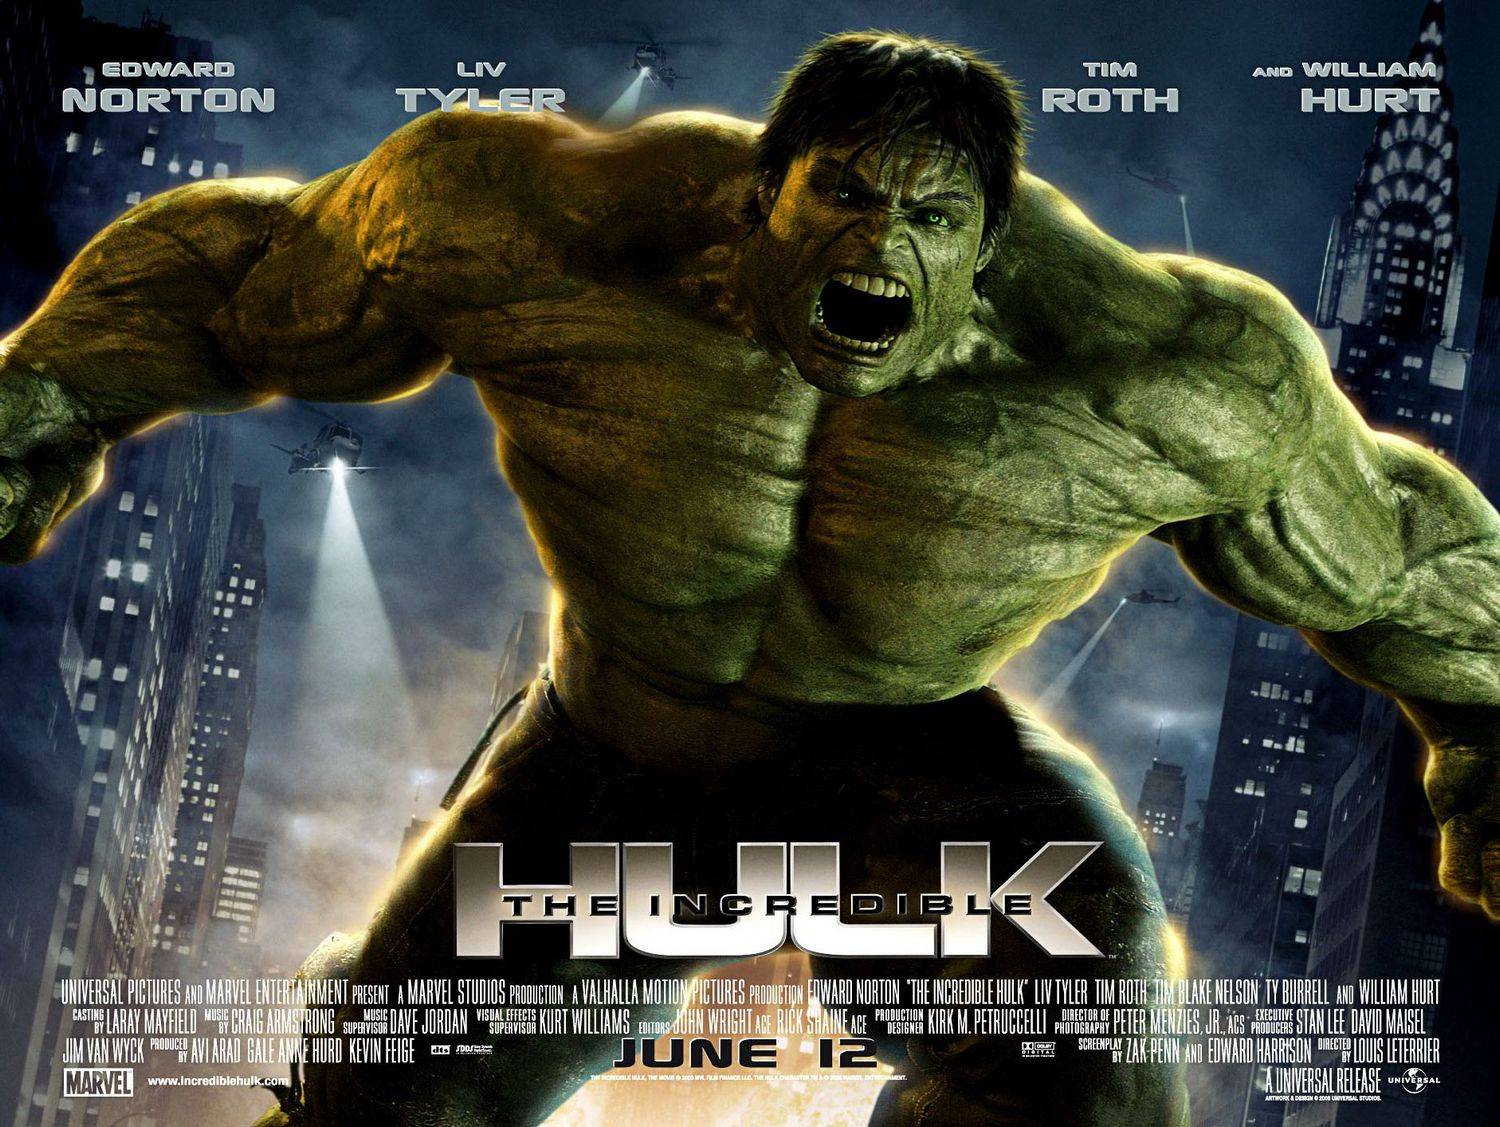 2162947 Desktop The Incredible Hulk Full Resolution - Incredible Hulk 2008 , HD Wallpaper & Backgrounds